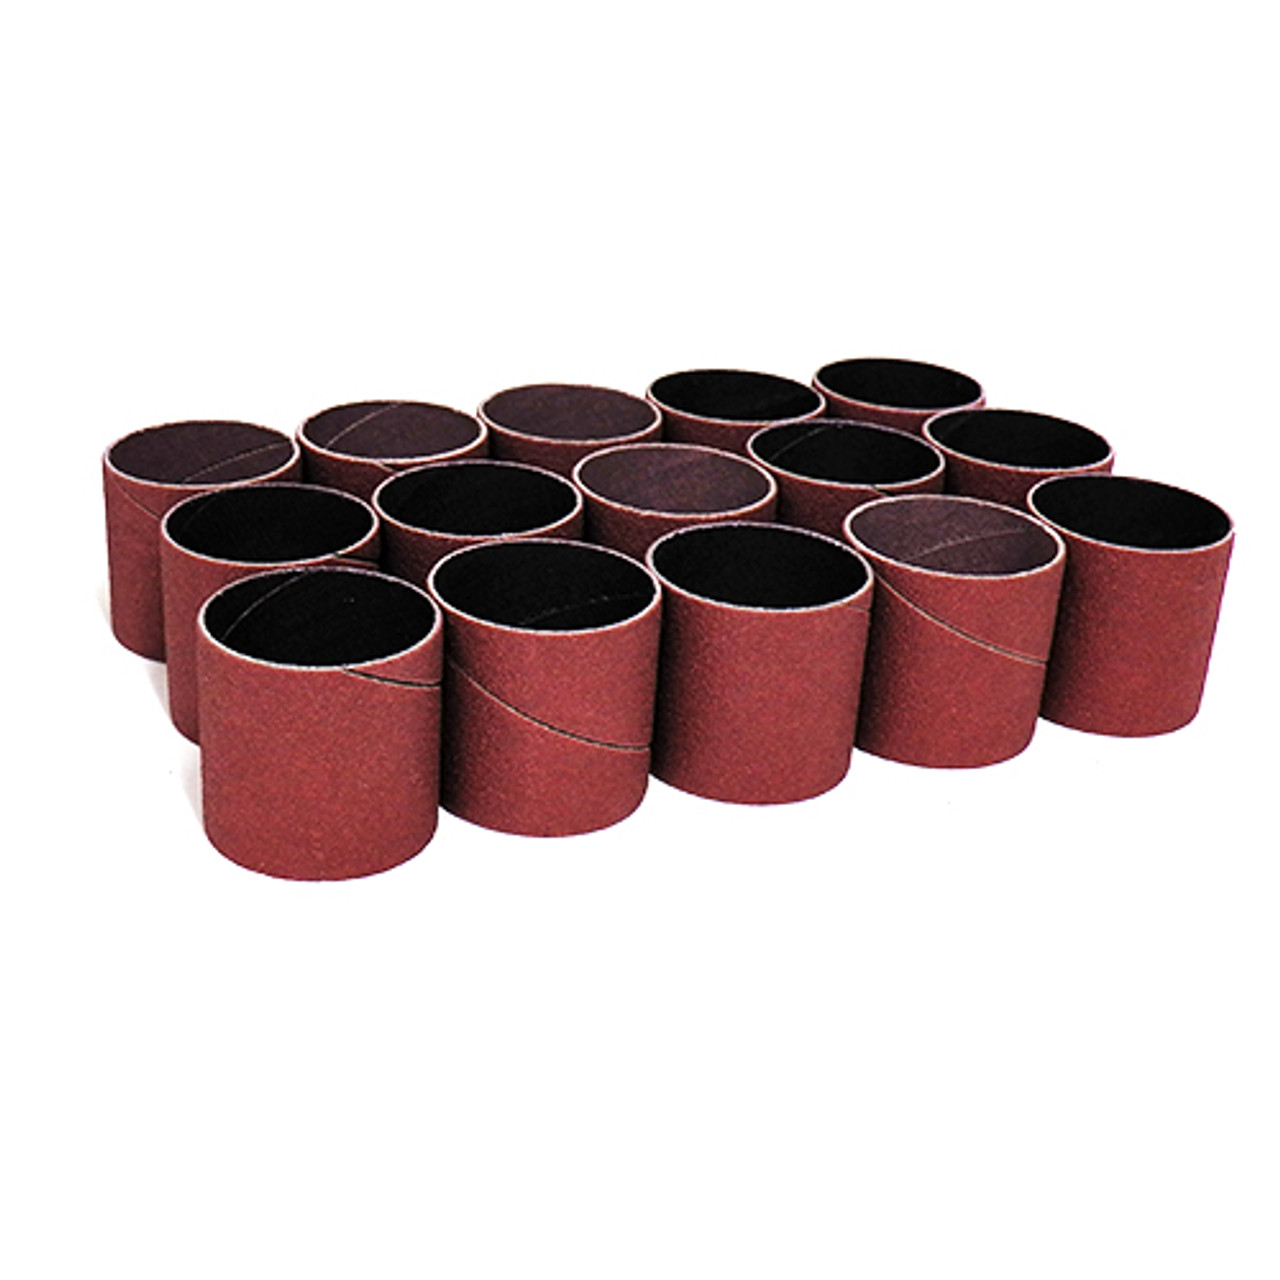 Klingspor Abrasives Aluminum Oxide Sanding Sleeves, 1-1/2"x 1-1/2" 15pk Assortment